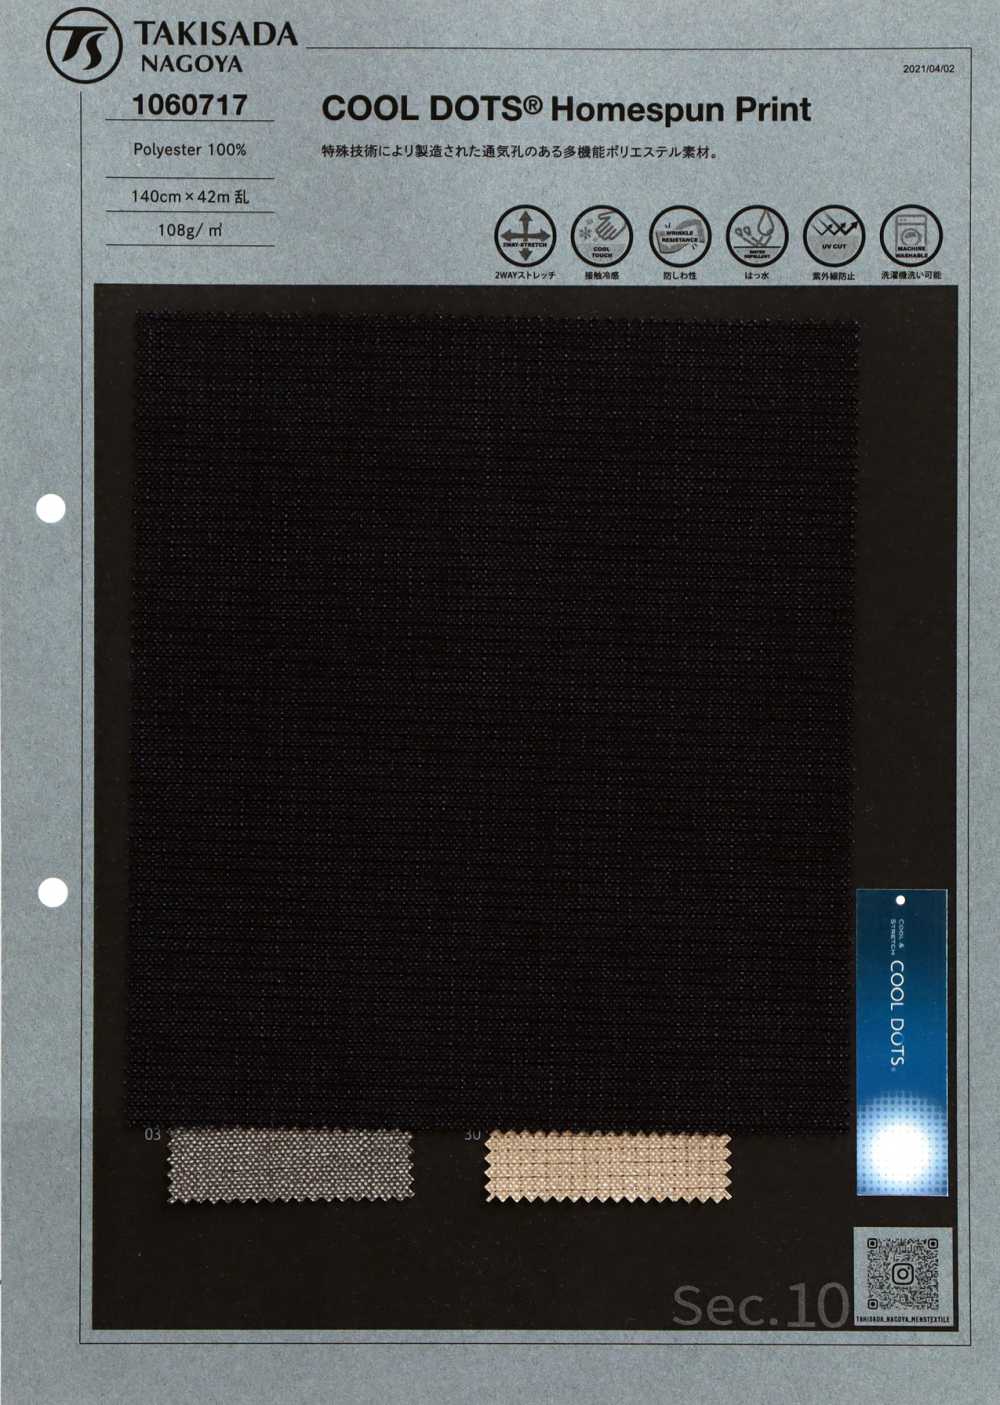 1060717 COOL DOTS® Home Spun Print[Textile / Fabric] Takisada Nagoya